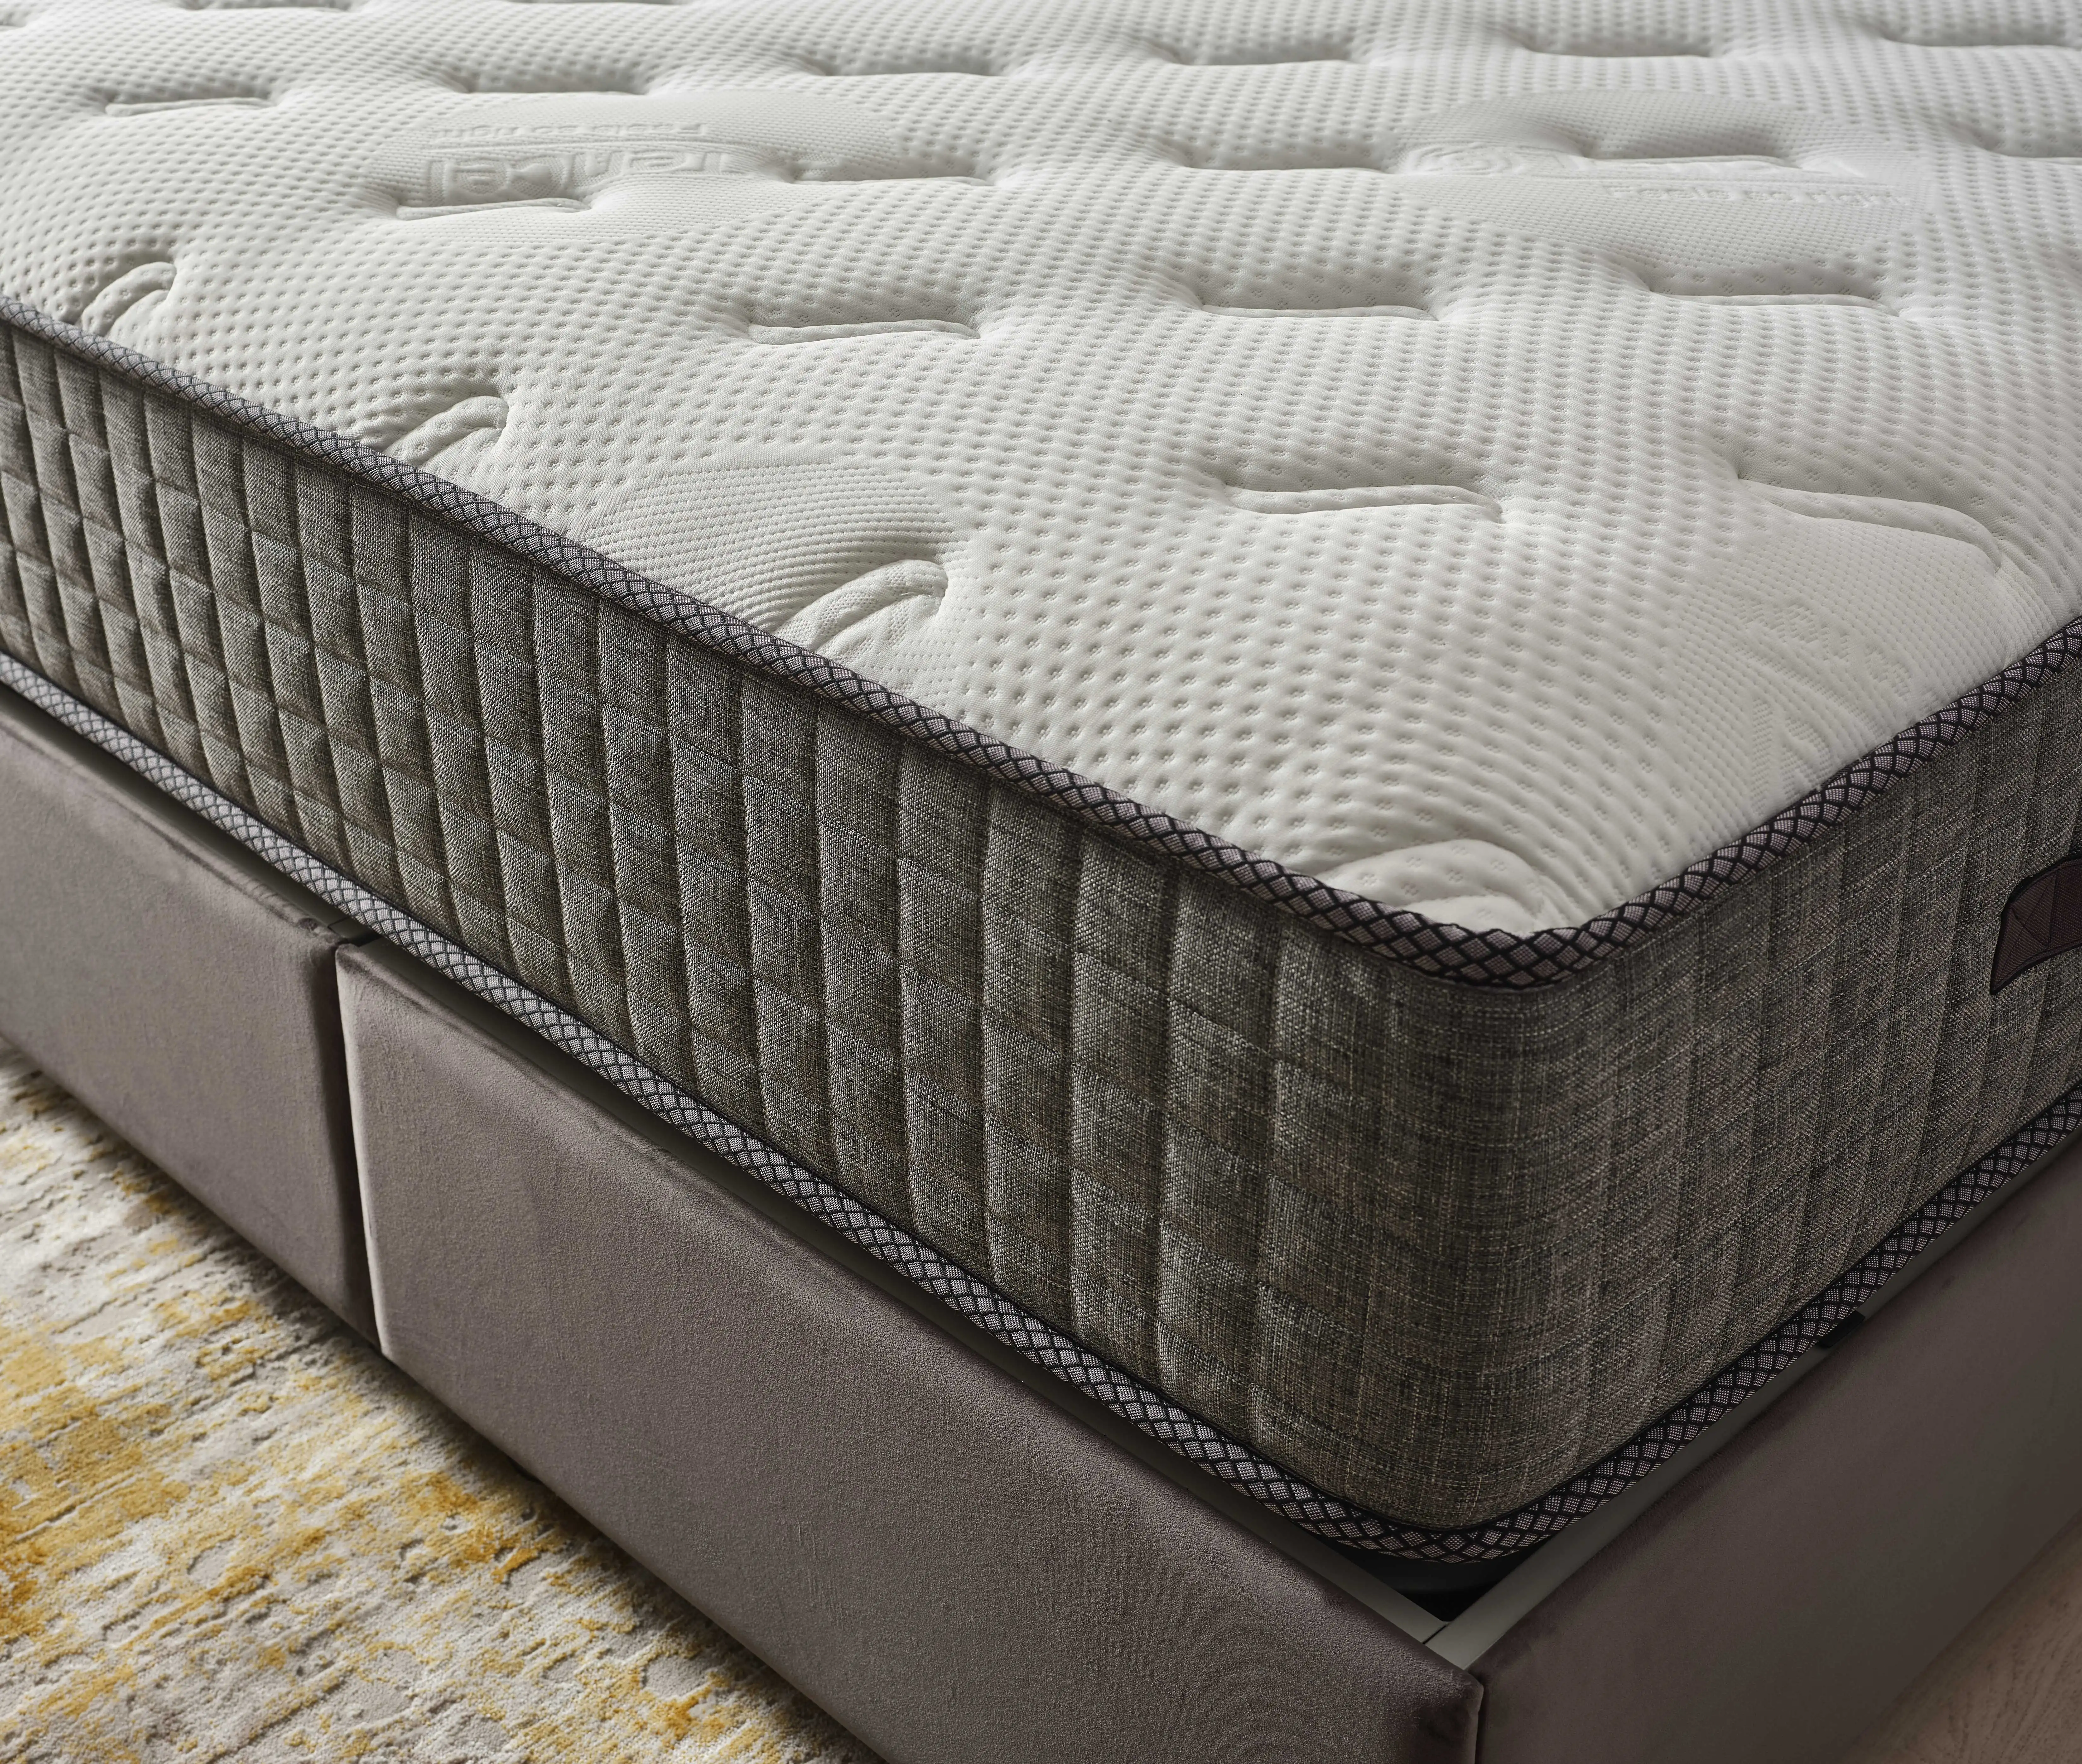 Duet mattress pocket sprung from Turkey for Ireland market memory foam firm foam soft medium bamboo sponge comfortable relax